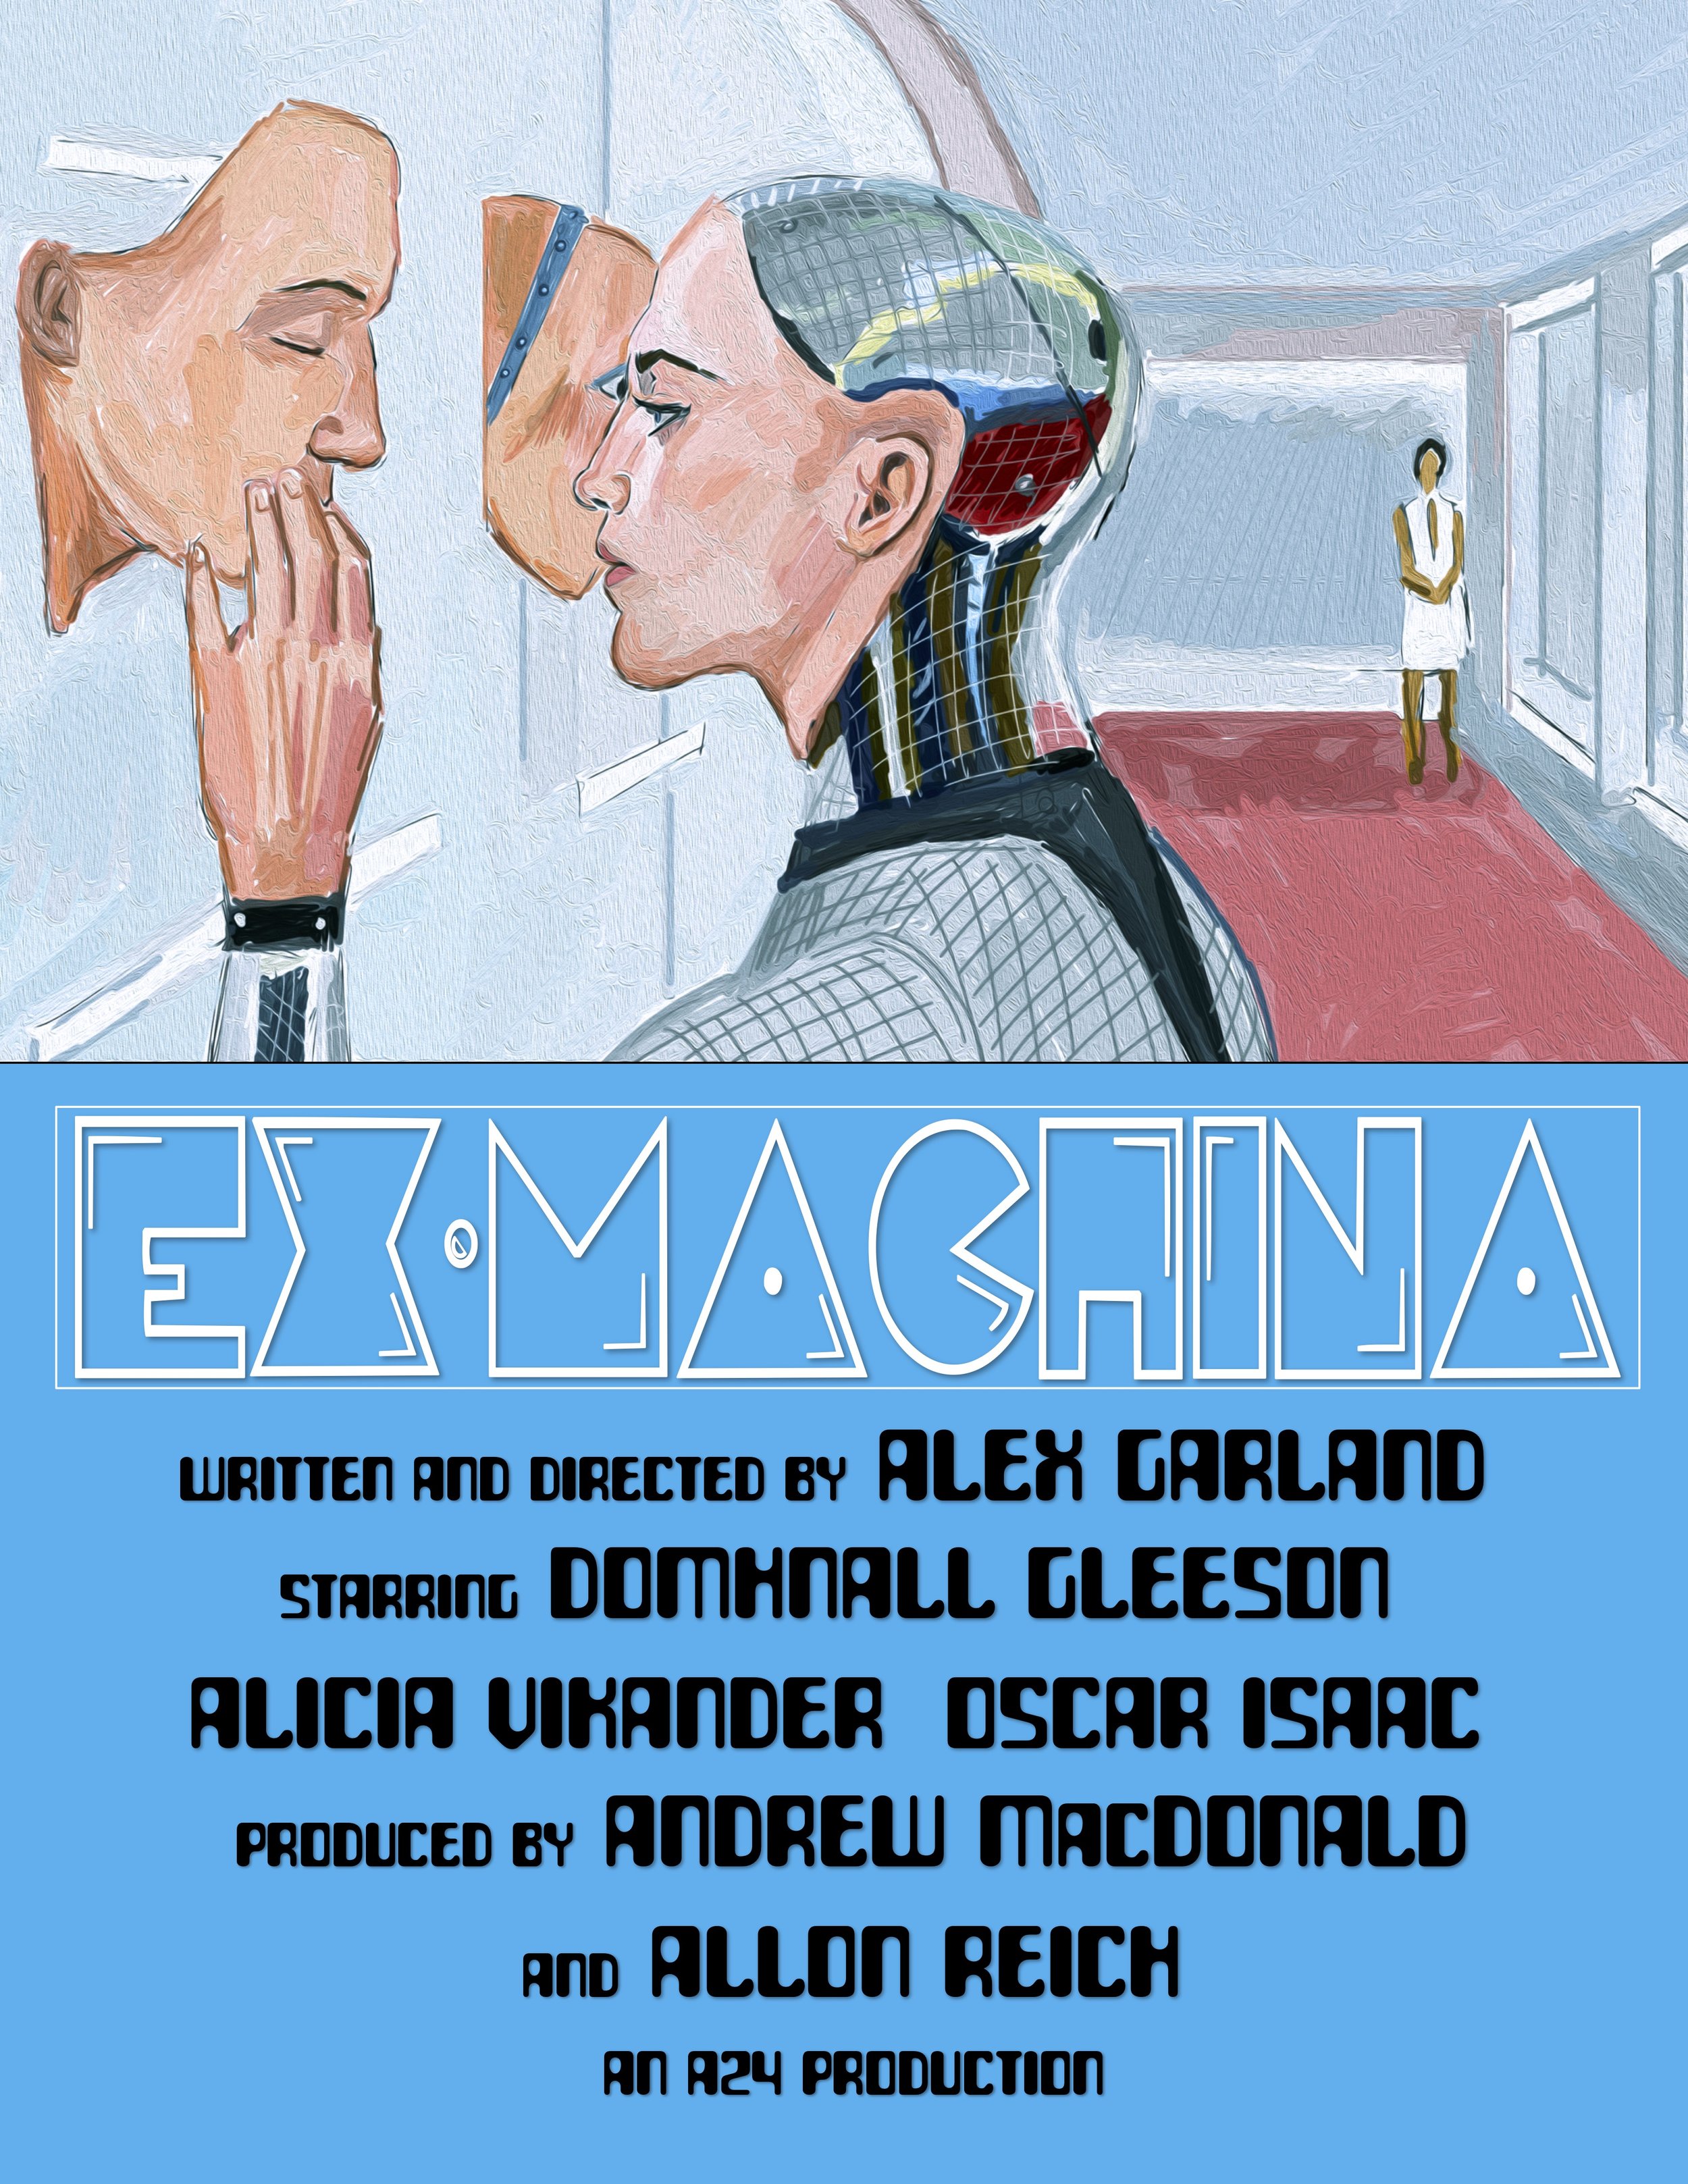 Ex-Machina (2014)